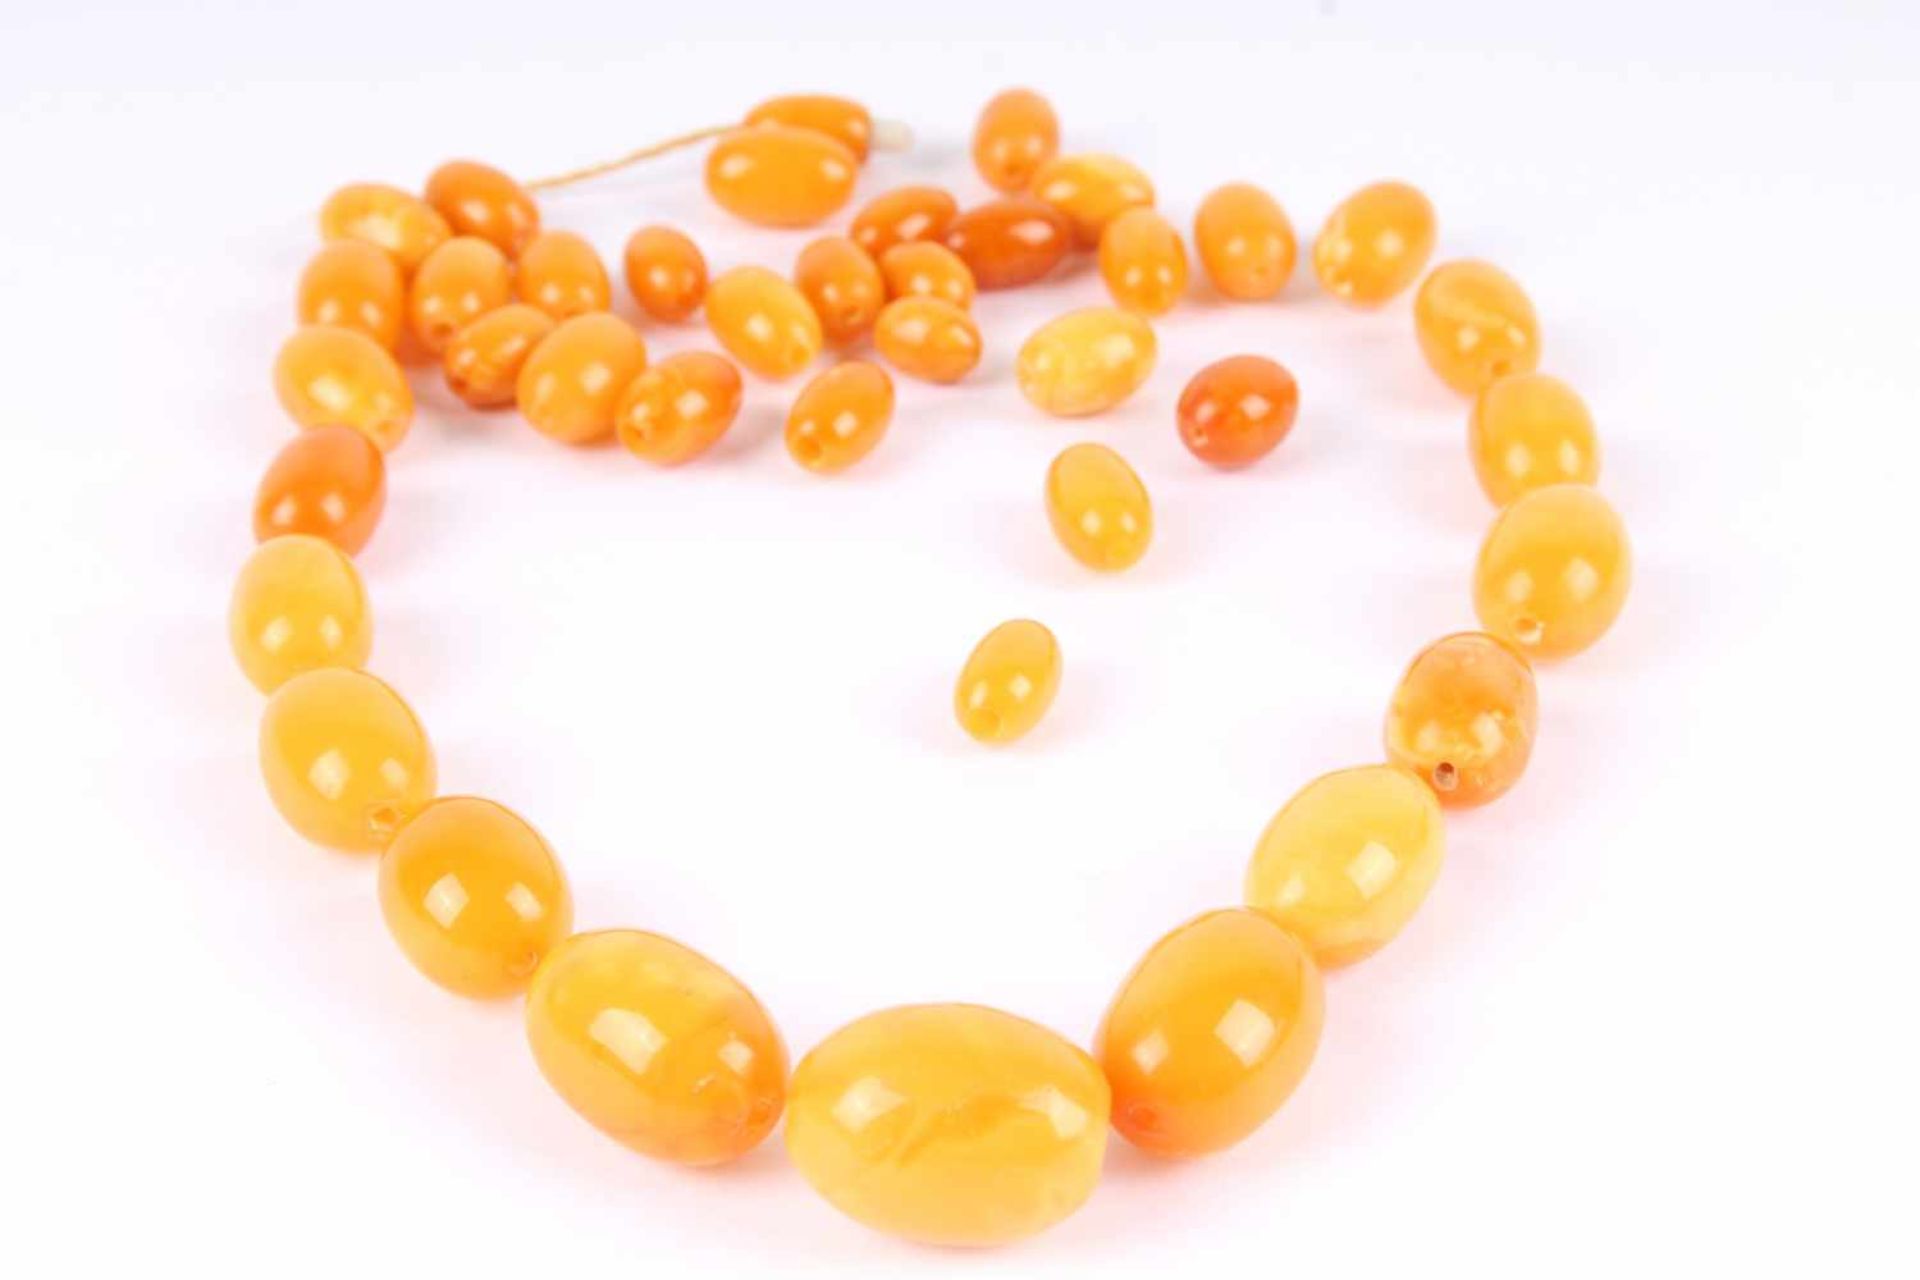 Art Deco Oliven Bernstein Collier / Halskette Amber, art deco olive amber necklace, - Bild 2 aus 4